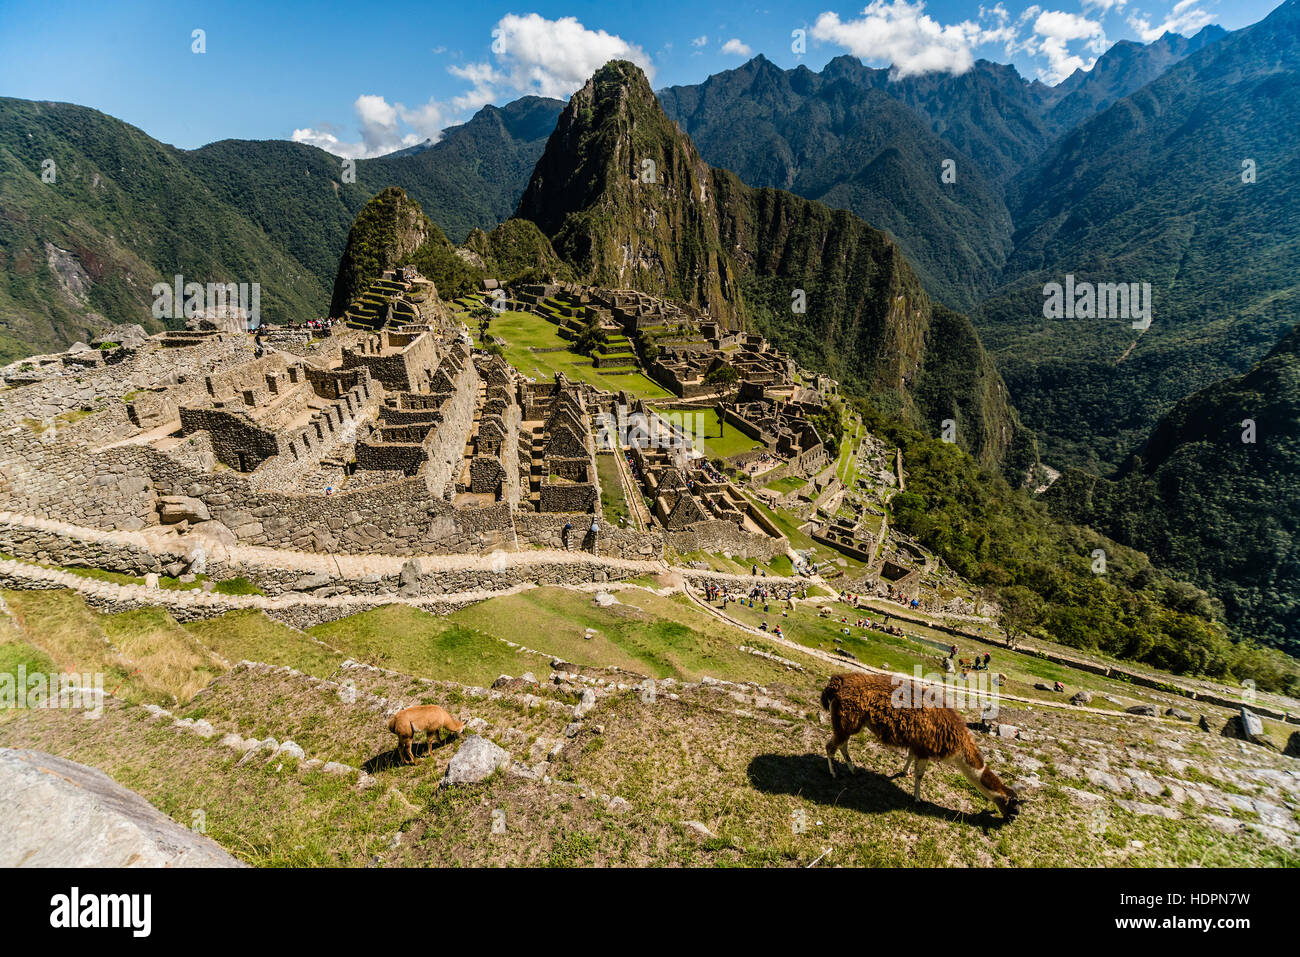 Blick auf die verlorene Inka-Stadt Machu Picchu in der Nähe von Cusco, Peru. Machu Picchu ist eine peruanische historische Heiligtum. Lama im Vordergrund zu sehen. Stockfoto